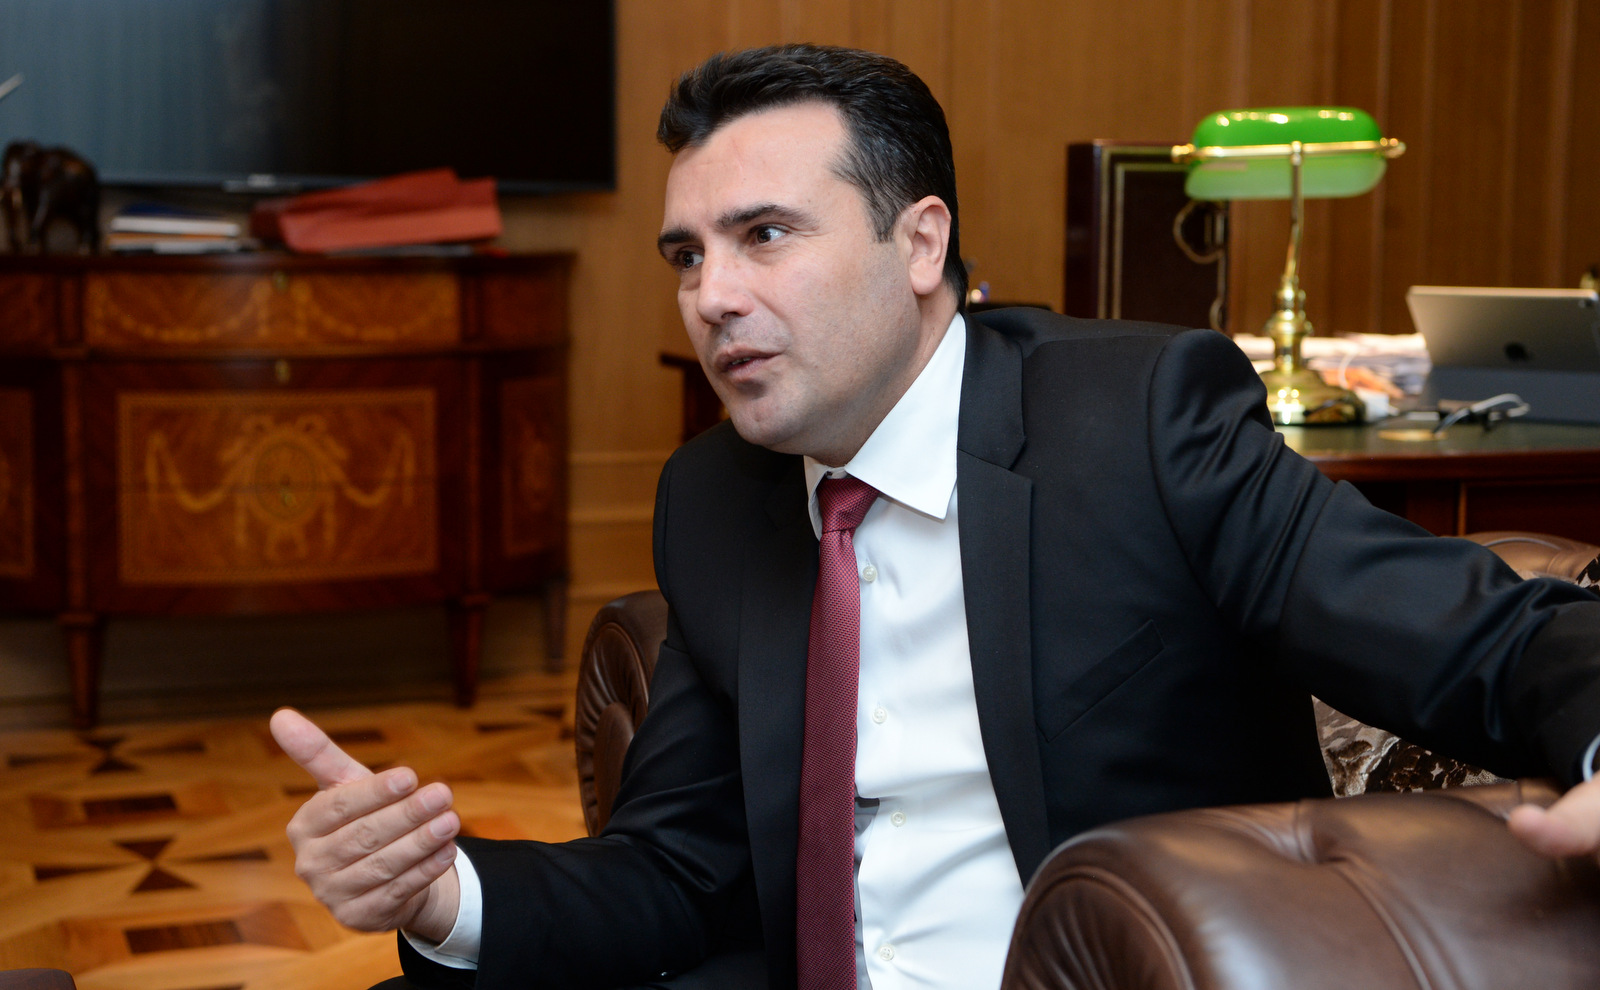 Σύσκεψη των πολιτικών αρχηγών στα Σκόπια για την επόμενη ημέρα